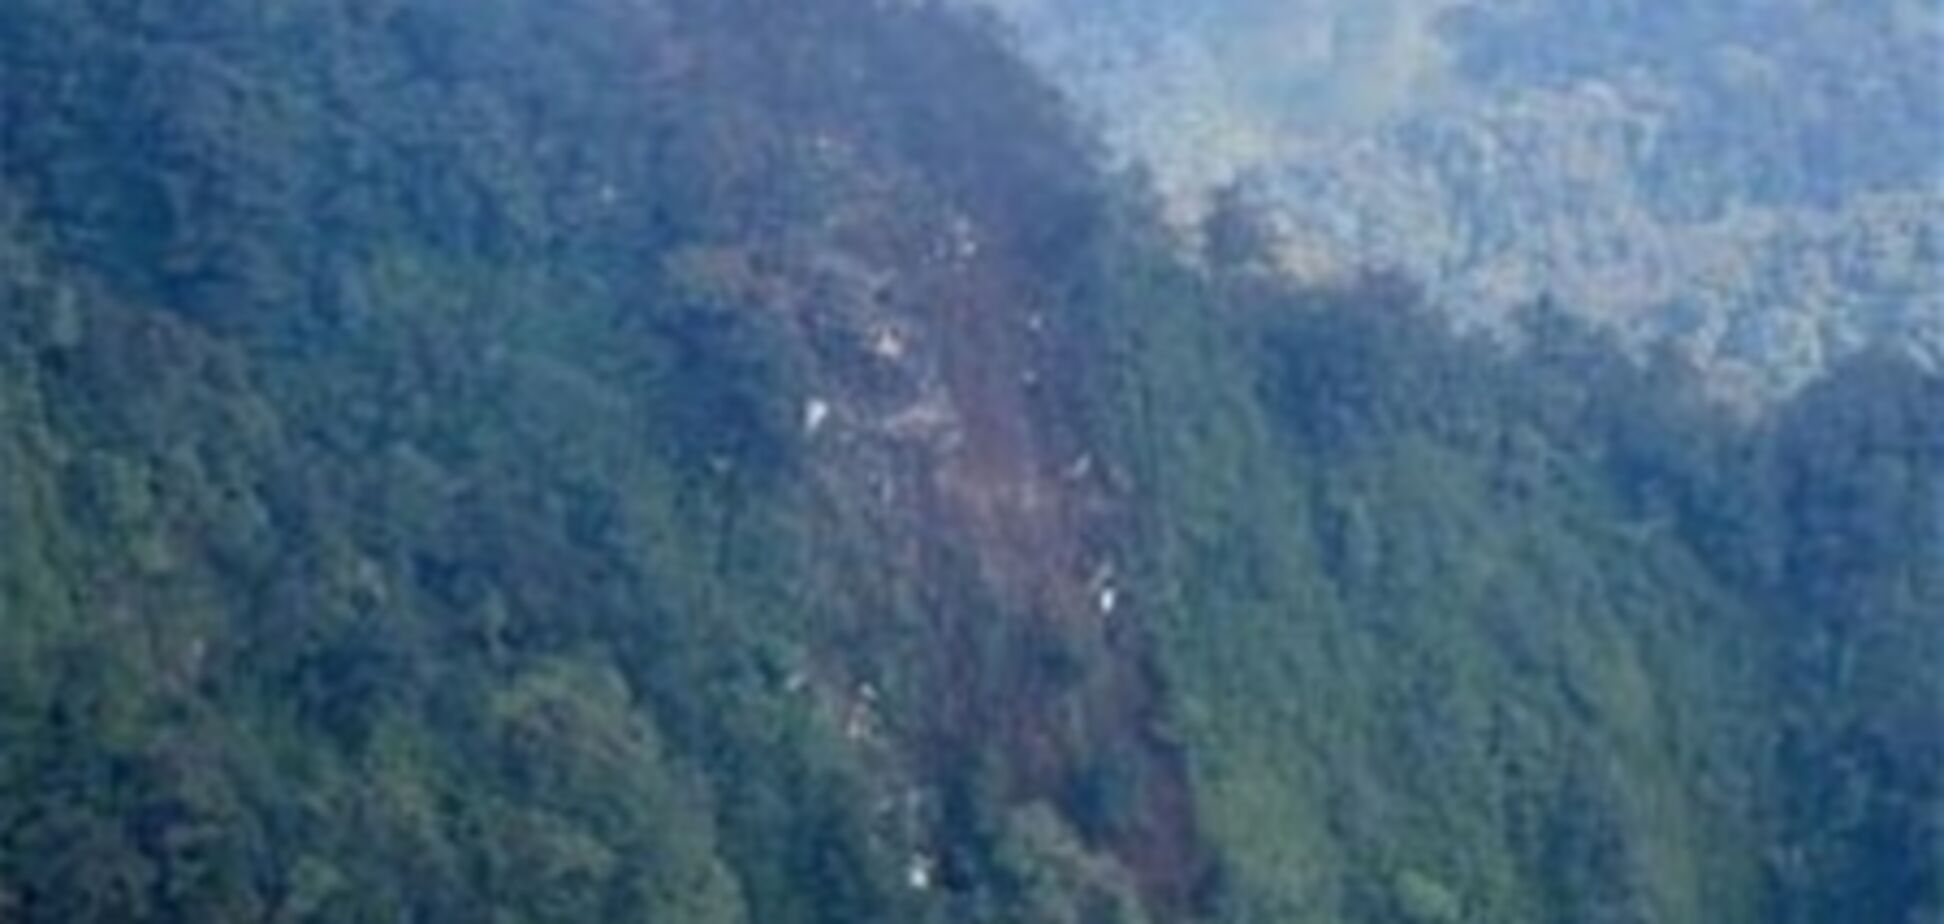 Пропавший самолет врезался в вертикальный склон горы - СМИ